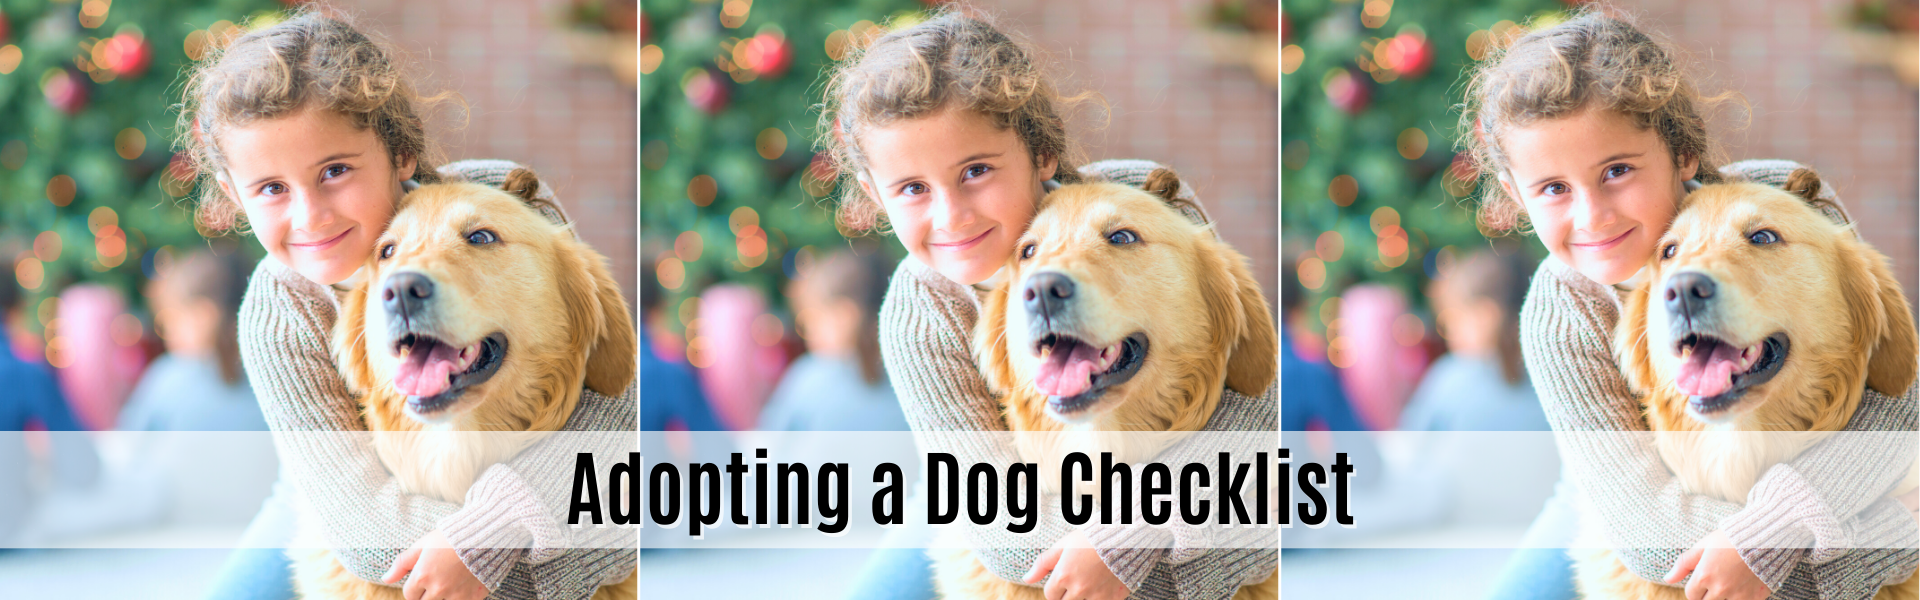 adopting a dog checklist